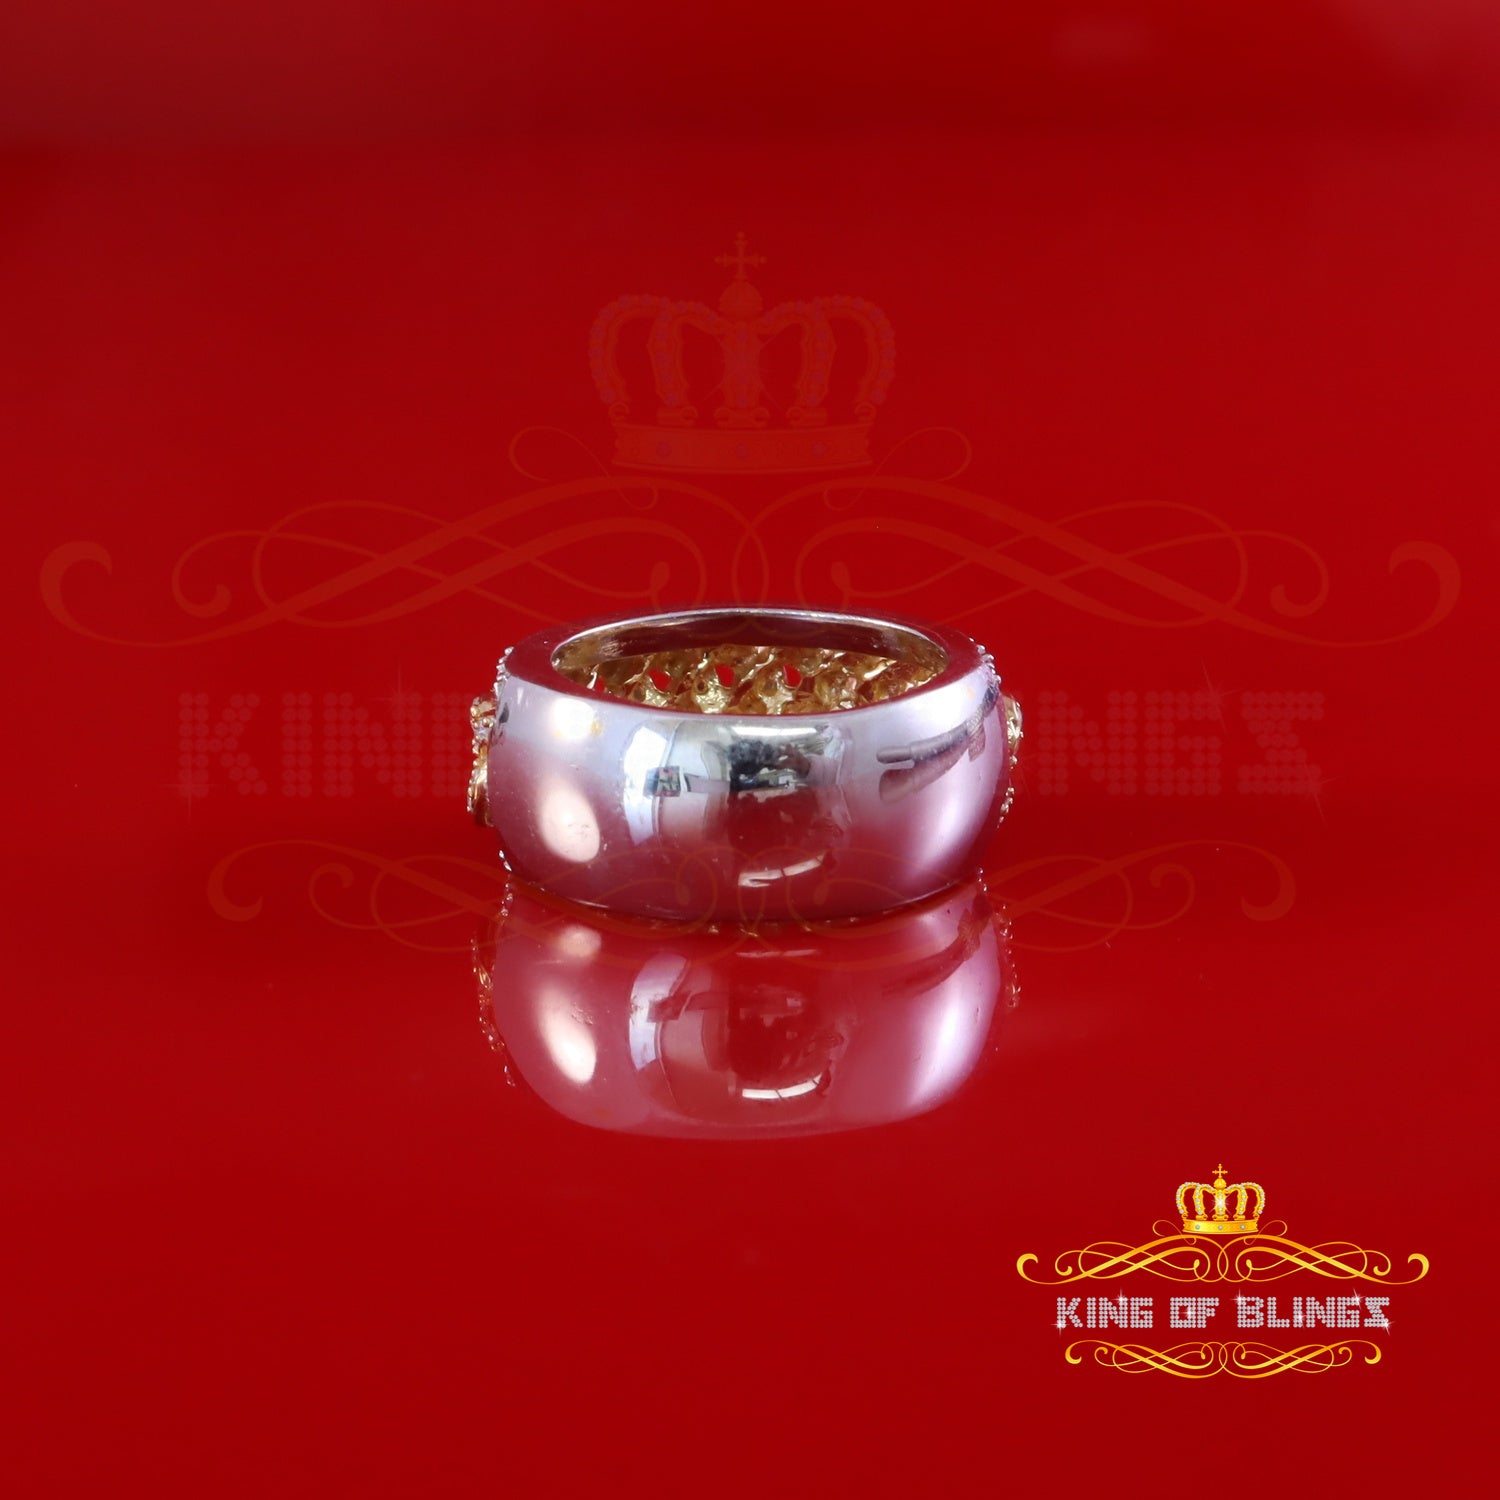 King Of Bling's 925 Silver Moissanite Cuban Shape White 1.50ct VVS D For Women Band Ring Size 8 King of Blings